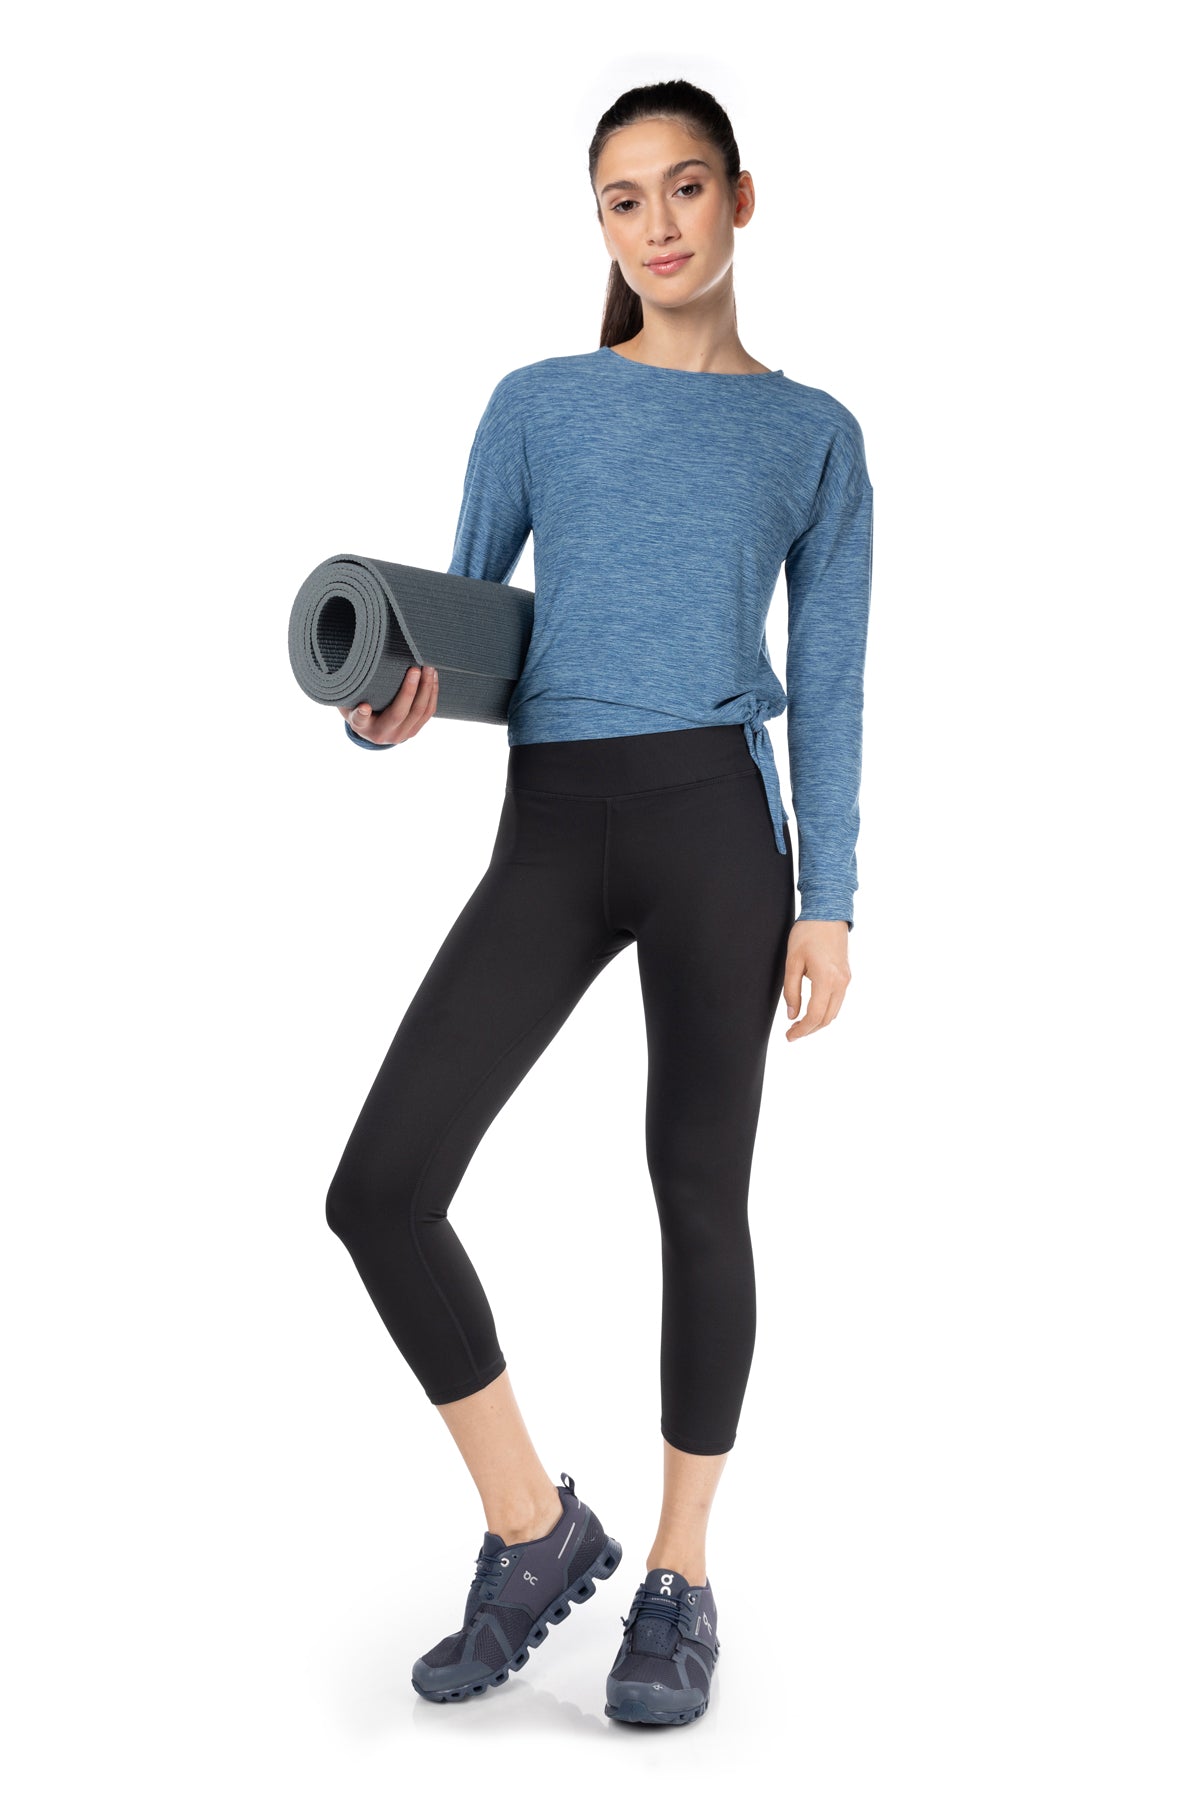 Buy DIAZ Gym wear Capri Workout Pants